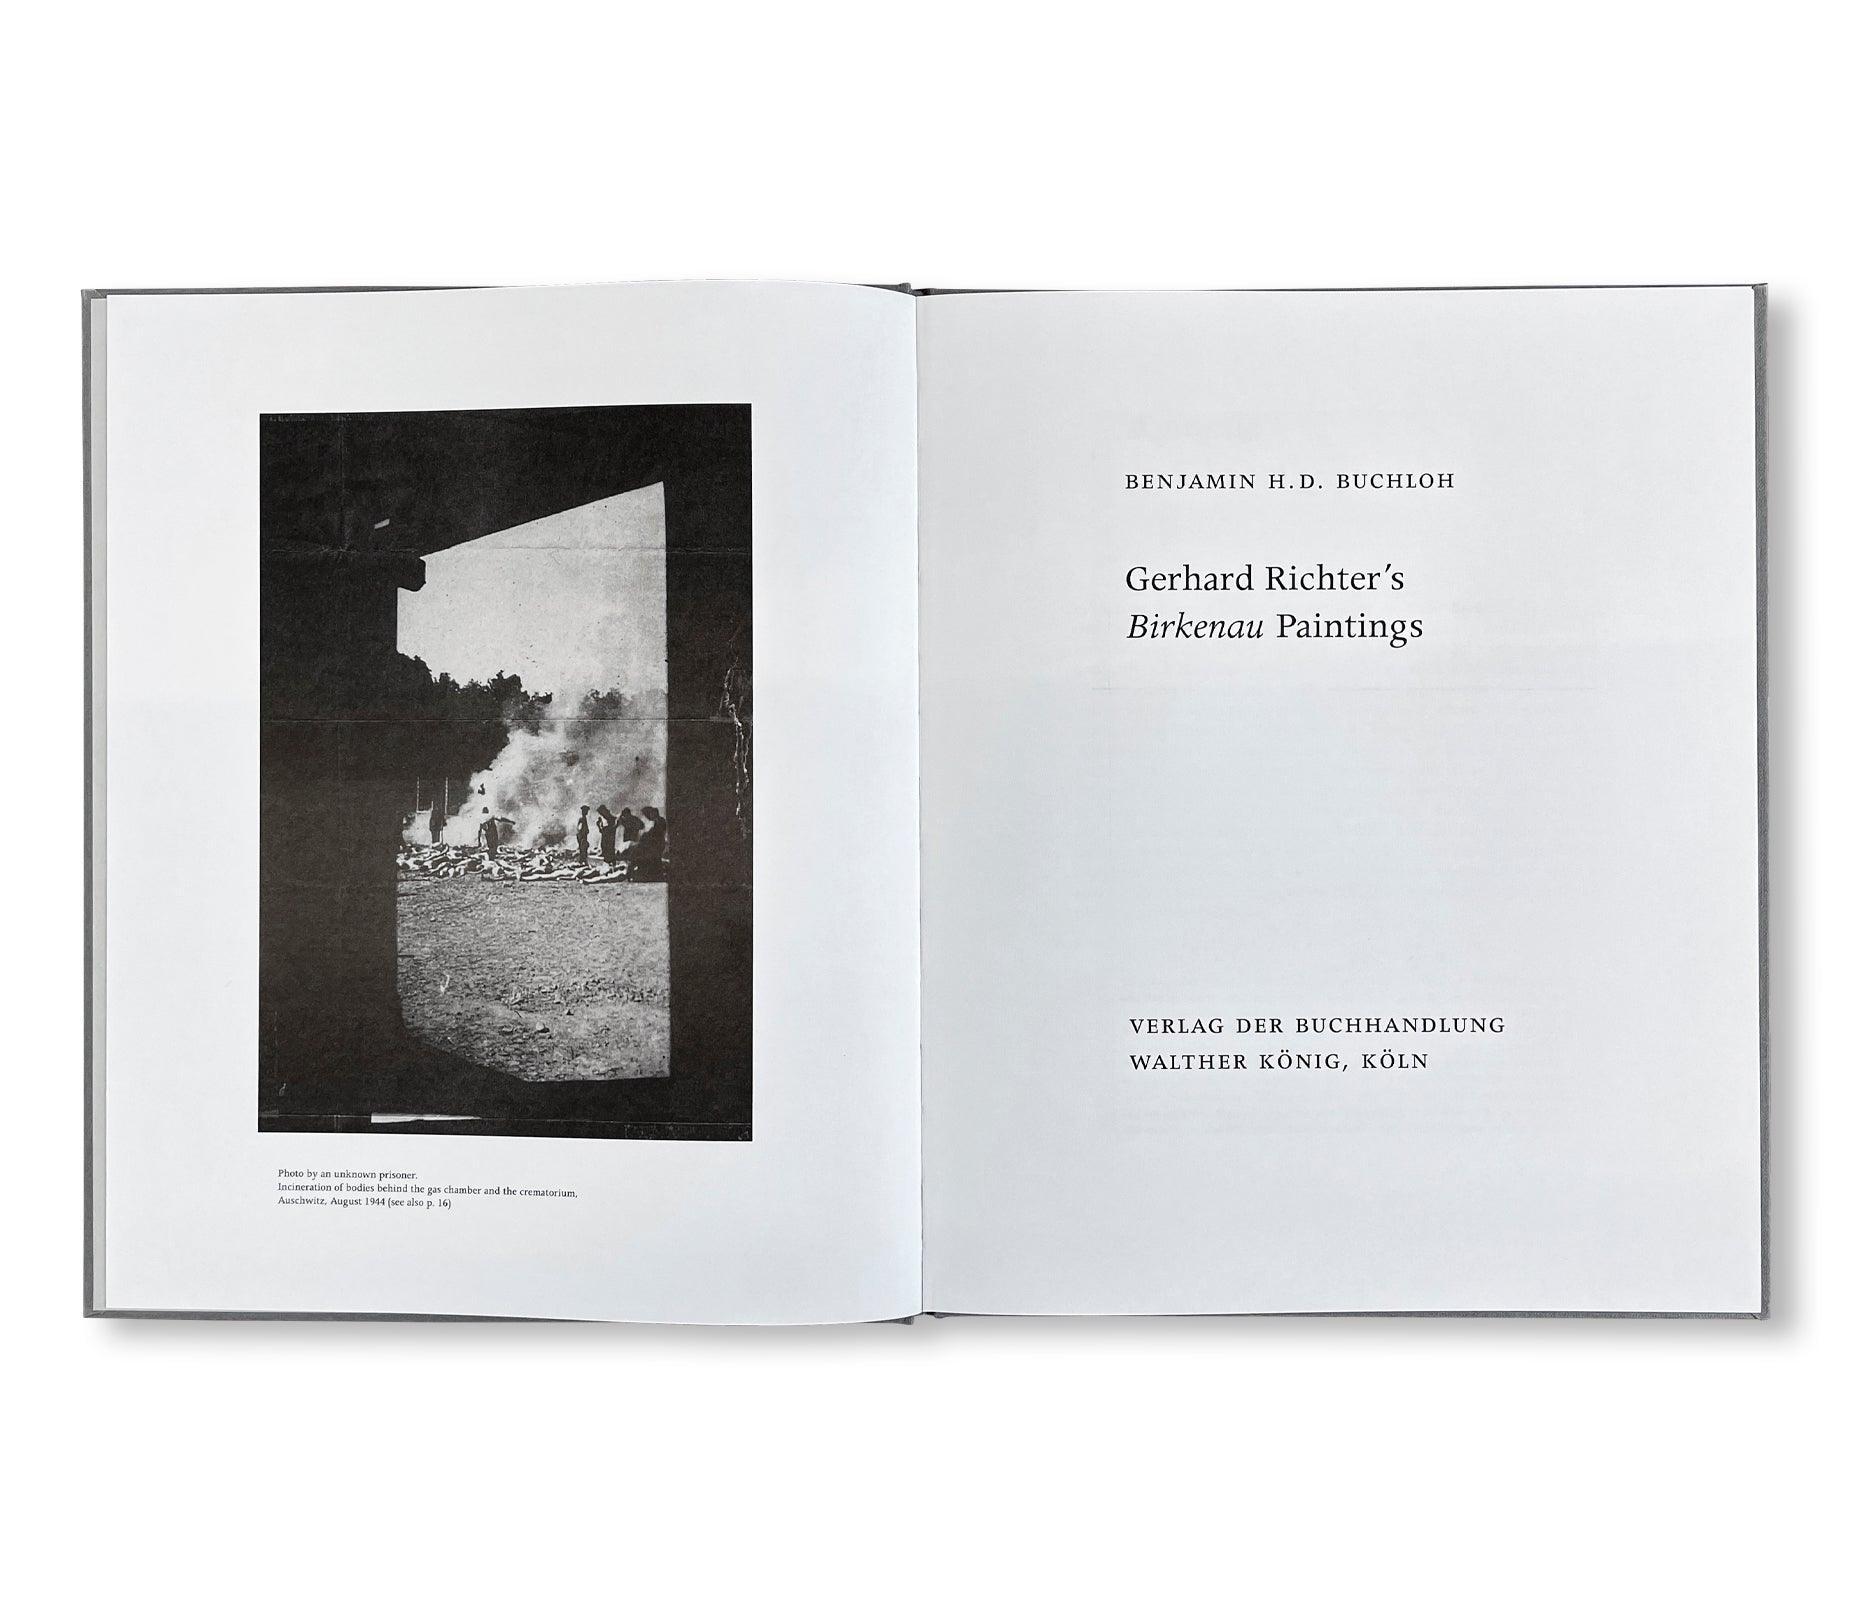 GERHARD RICHTERʼS BIRKENAU PAINTINGS by Gerhard Richter